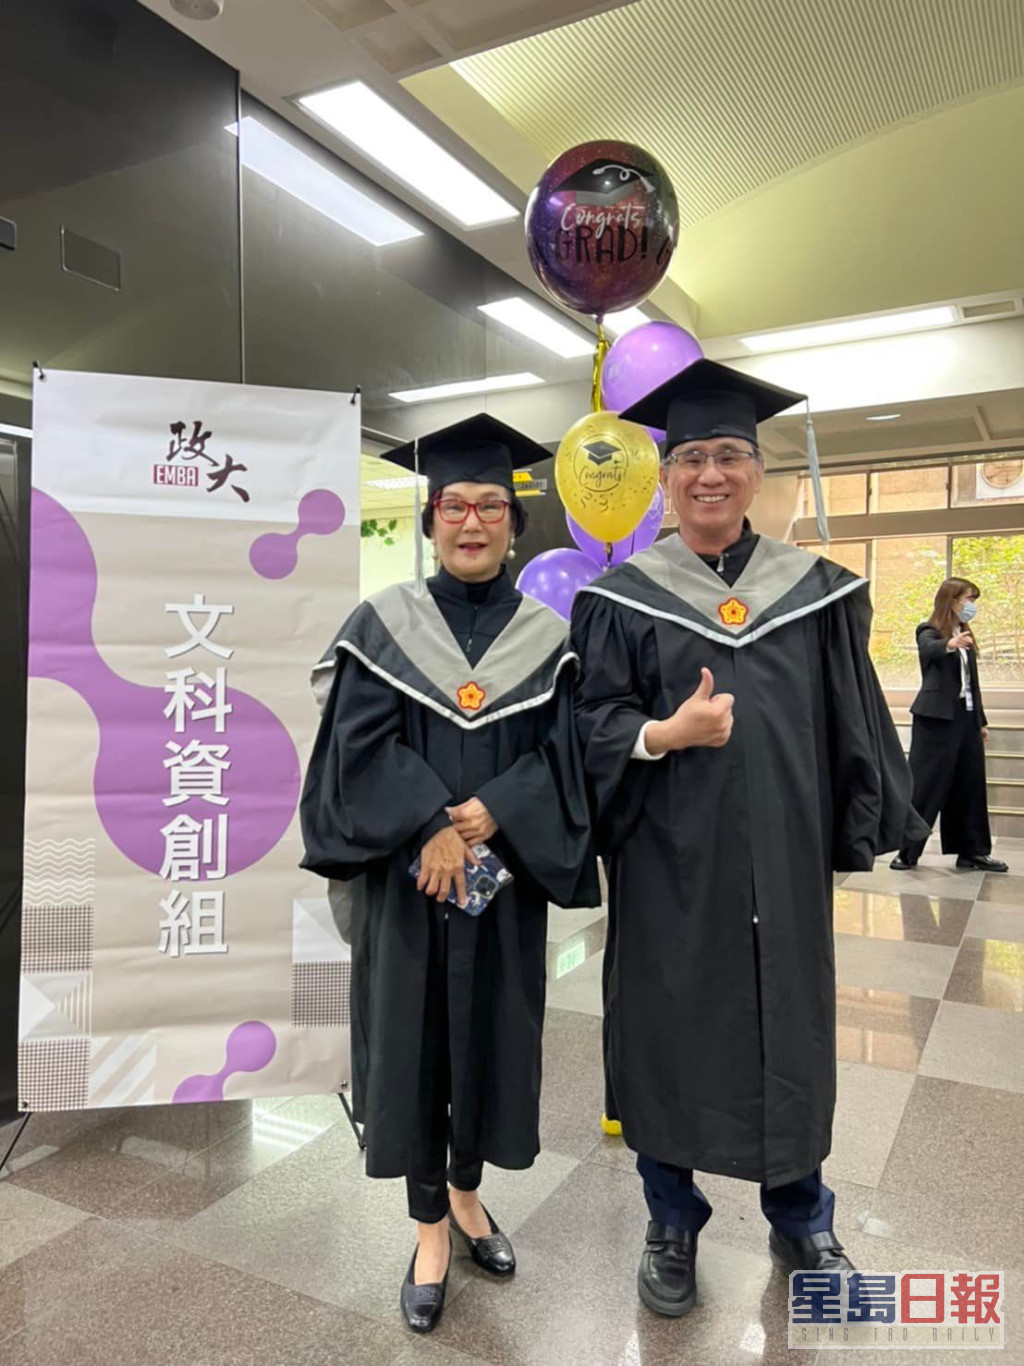 錦曾向傳媒透露，當年乳癌復發時被告知剩下3年命，她即報讀台灣國立政治大學的EMBA，並於兩年內完成課程，一圓大學畢業夢。